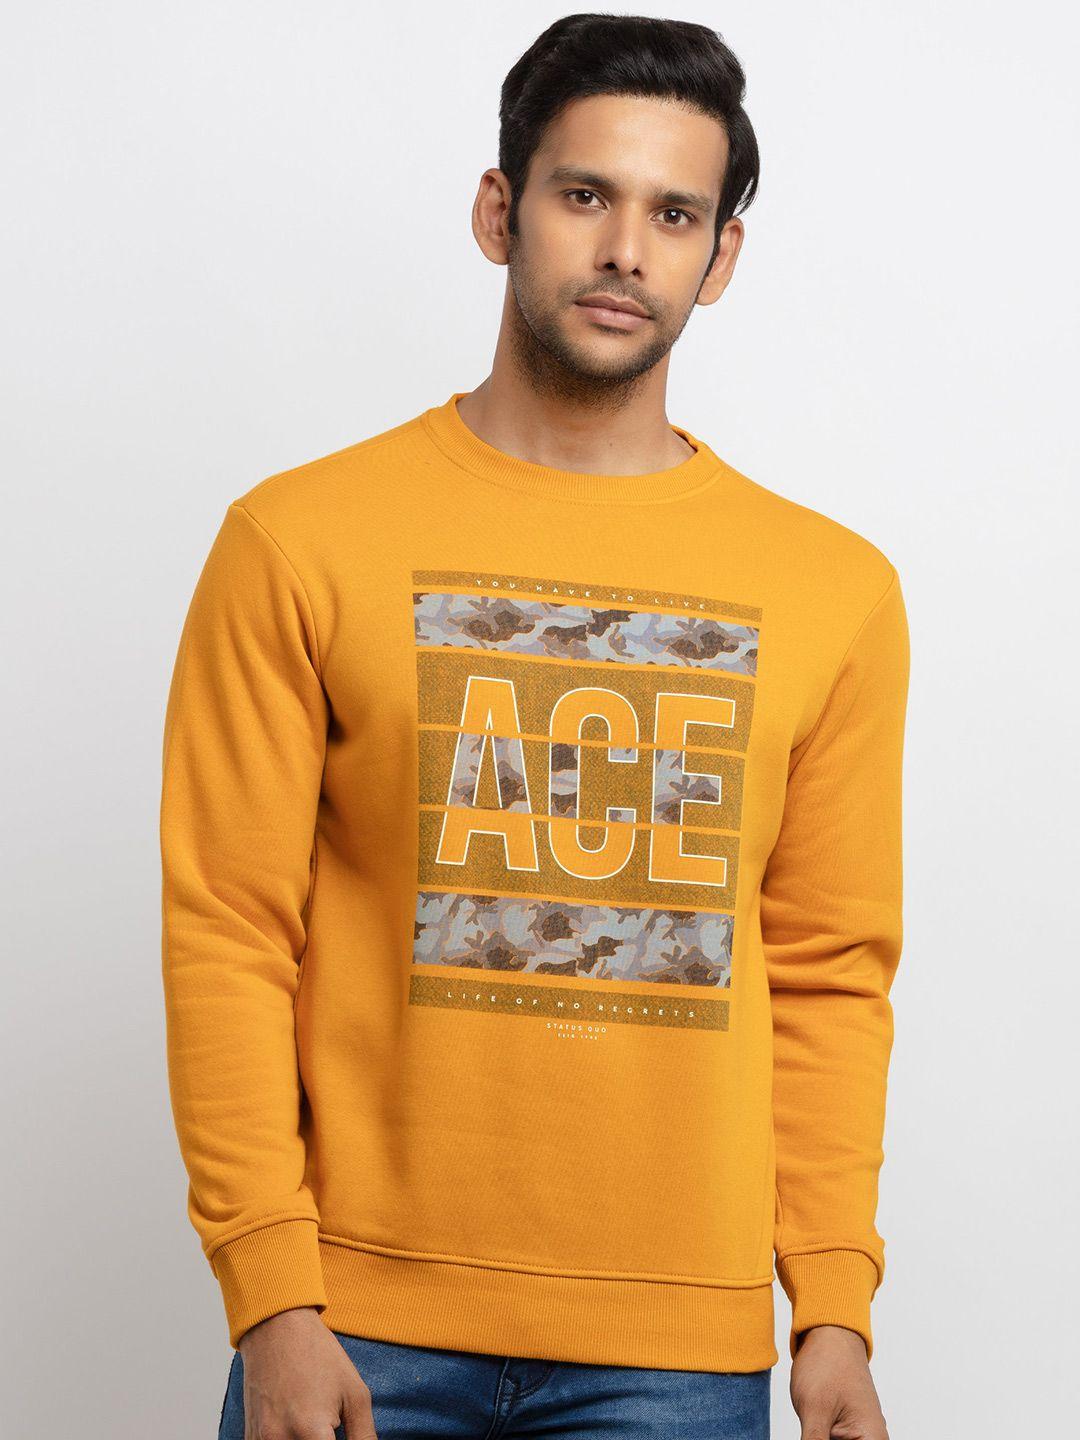 status quo men plus size graphic printed cotton sweatshirt